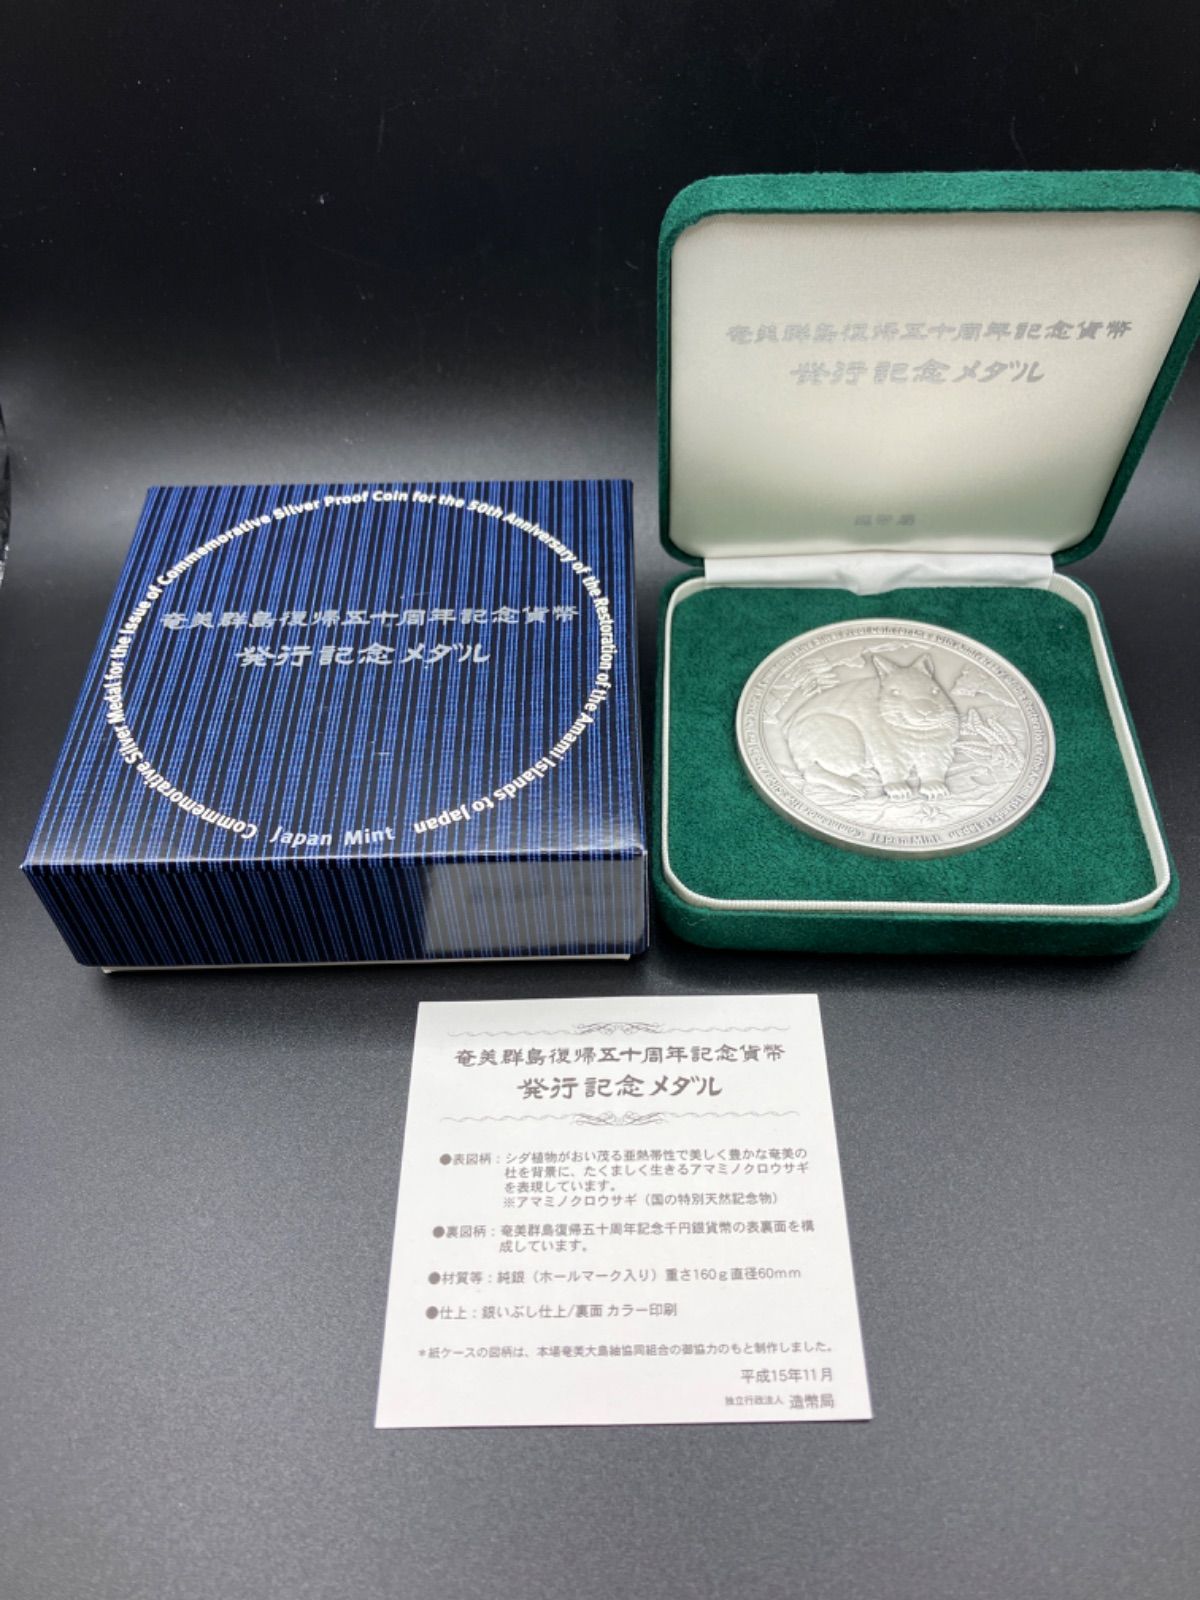 アウトレット☆送料無料】 純銀 奄美群島復帰50周年 発行記念メダル 